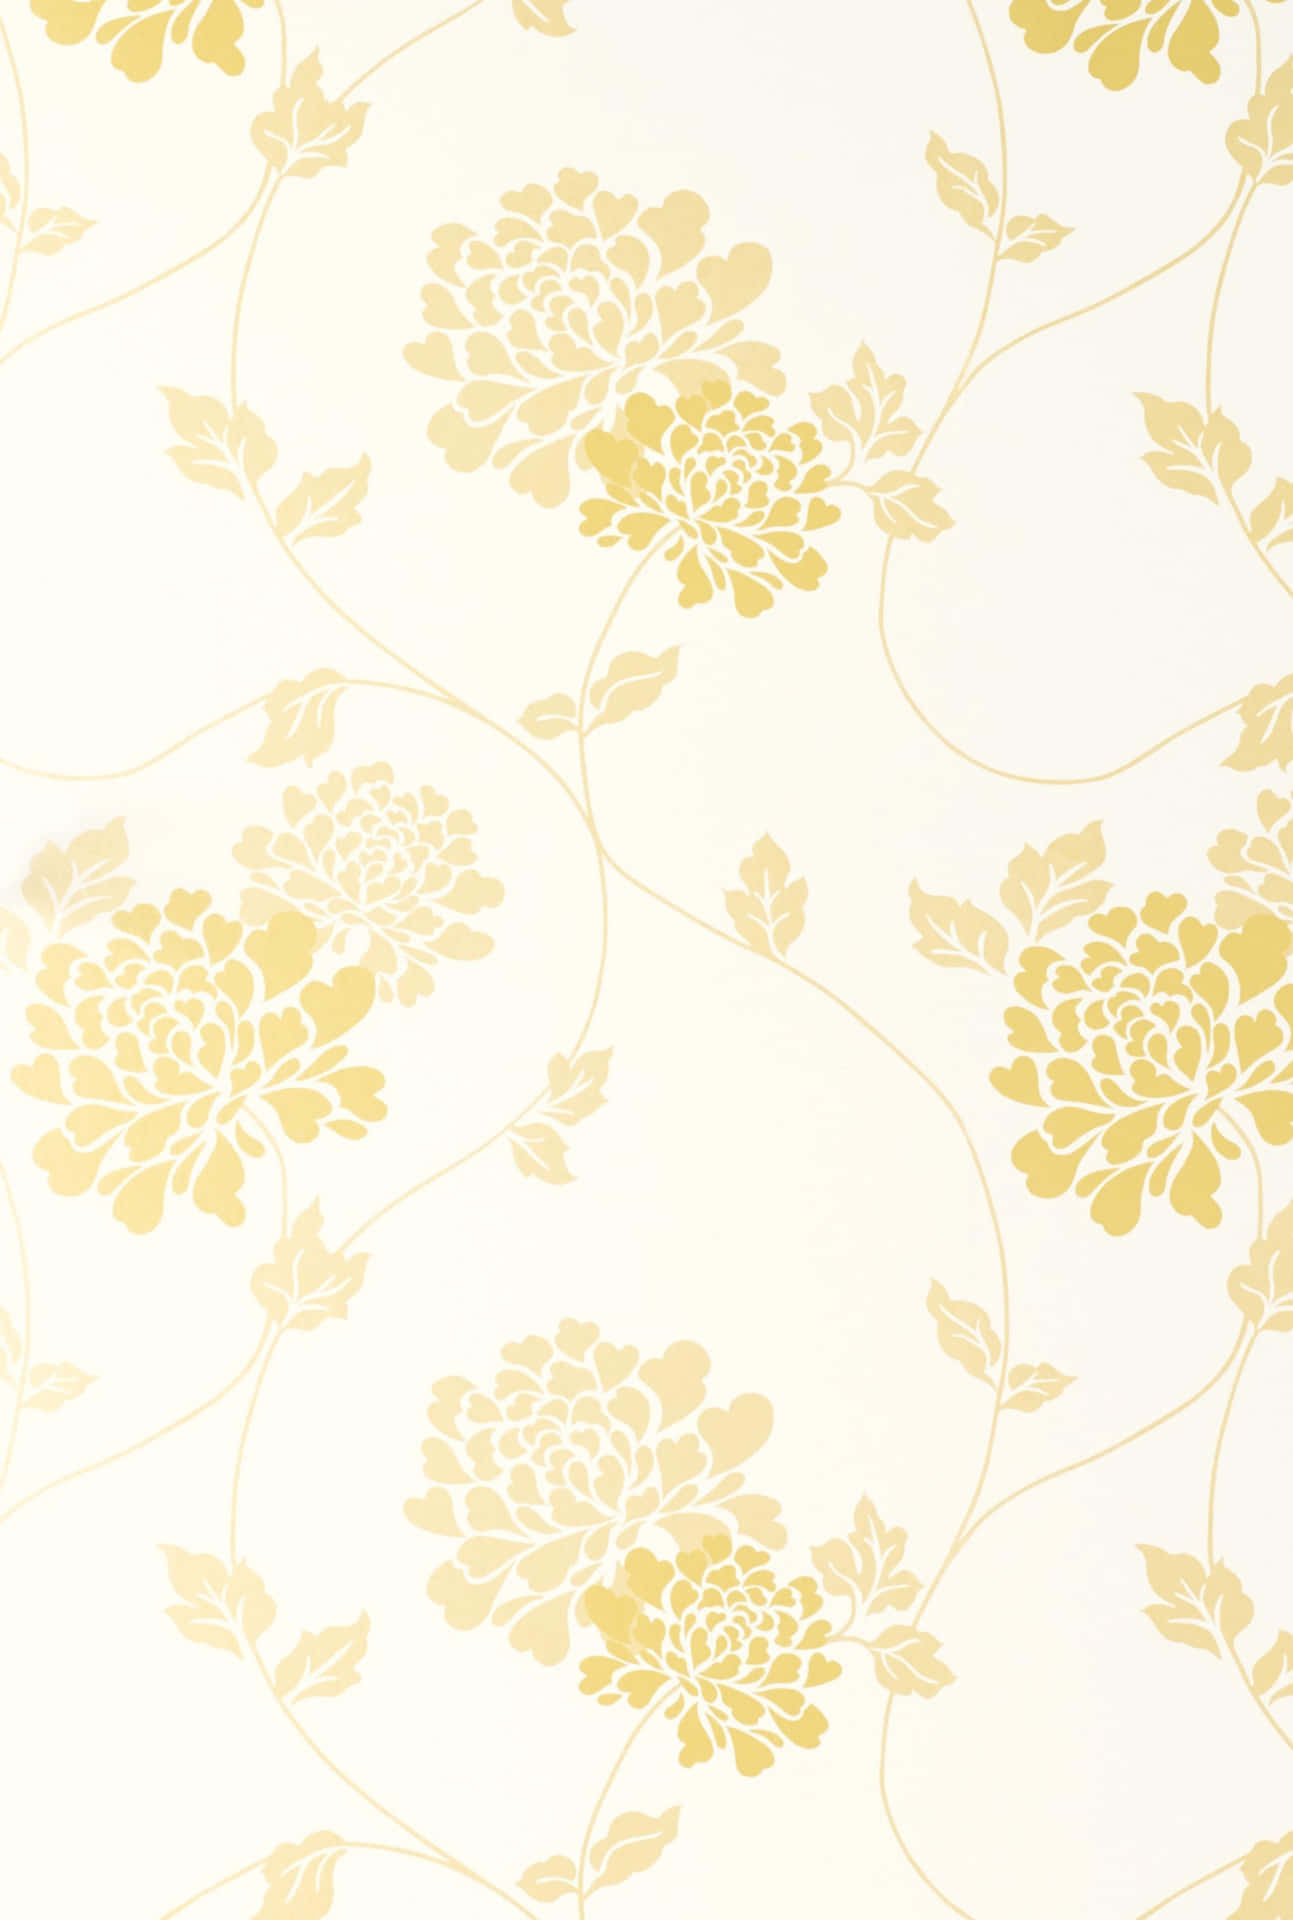 Elegant Golden Floral Pattern Wallpaper